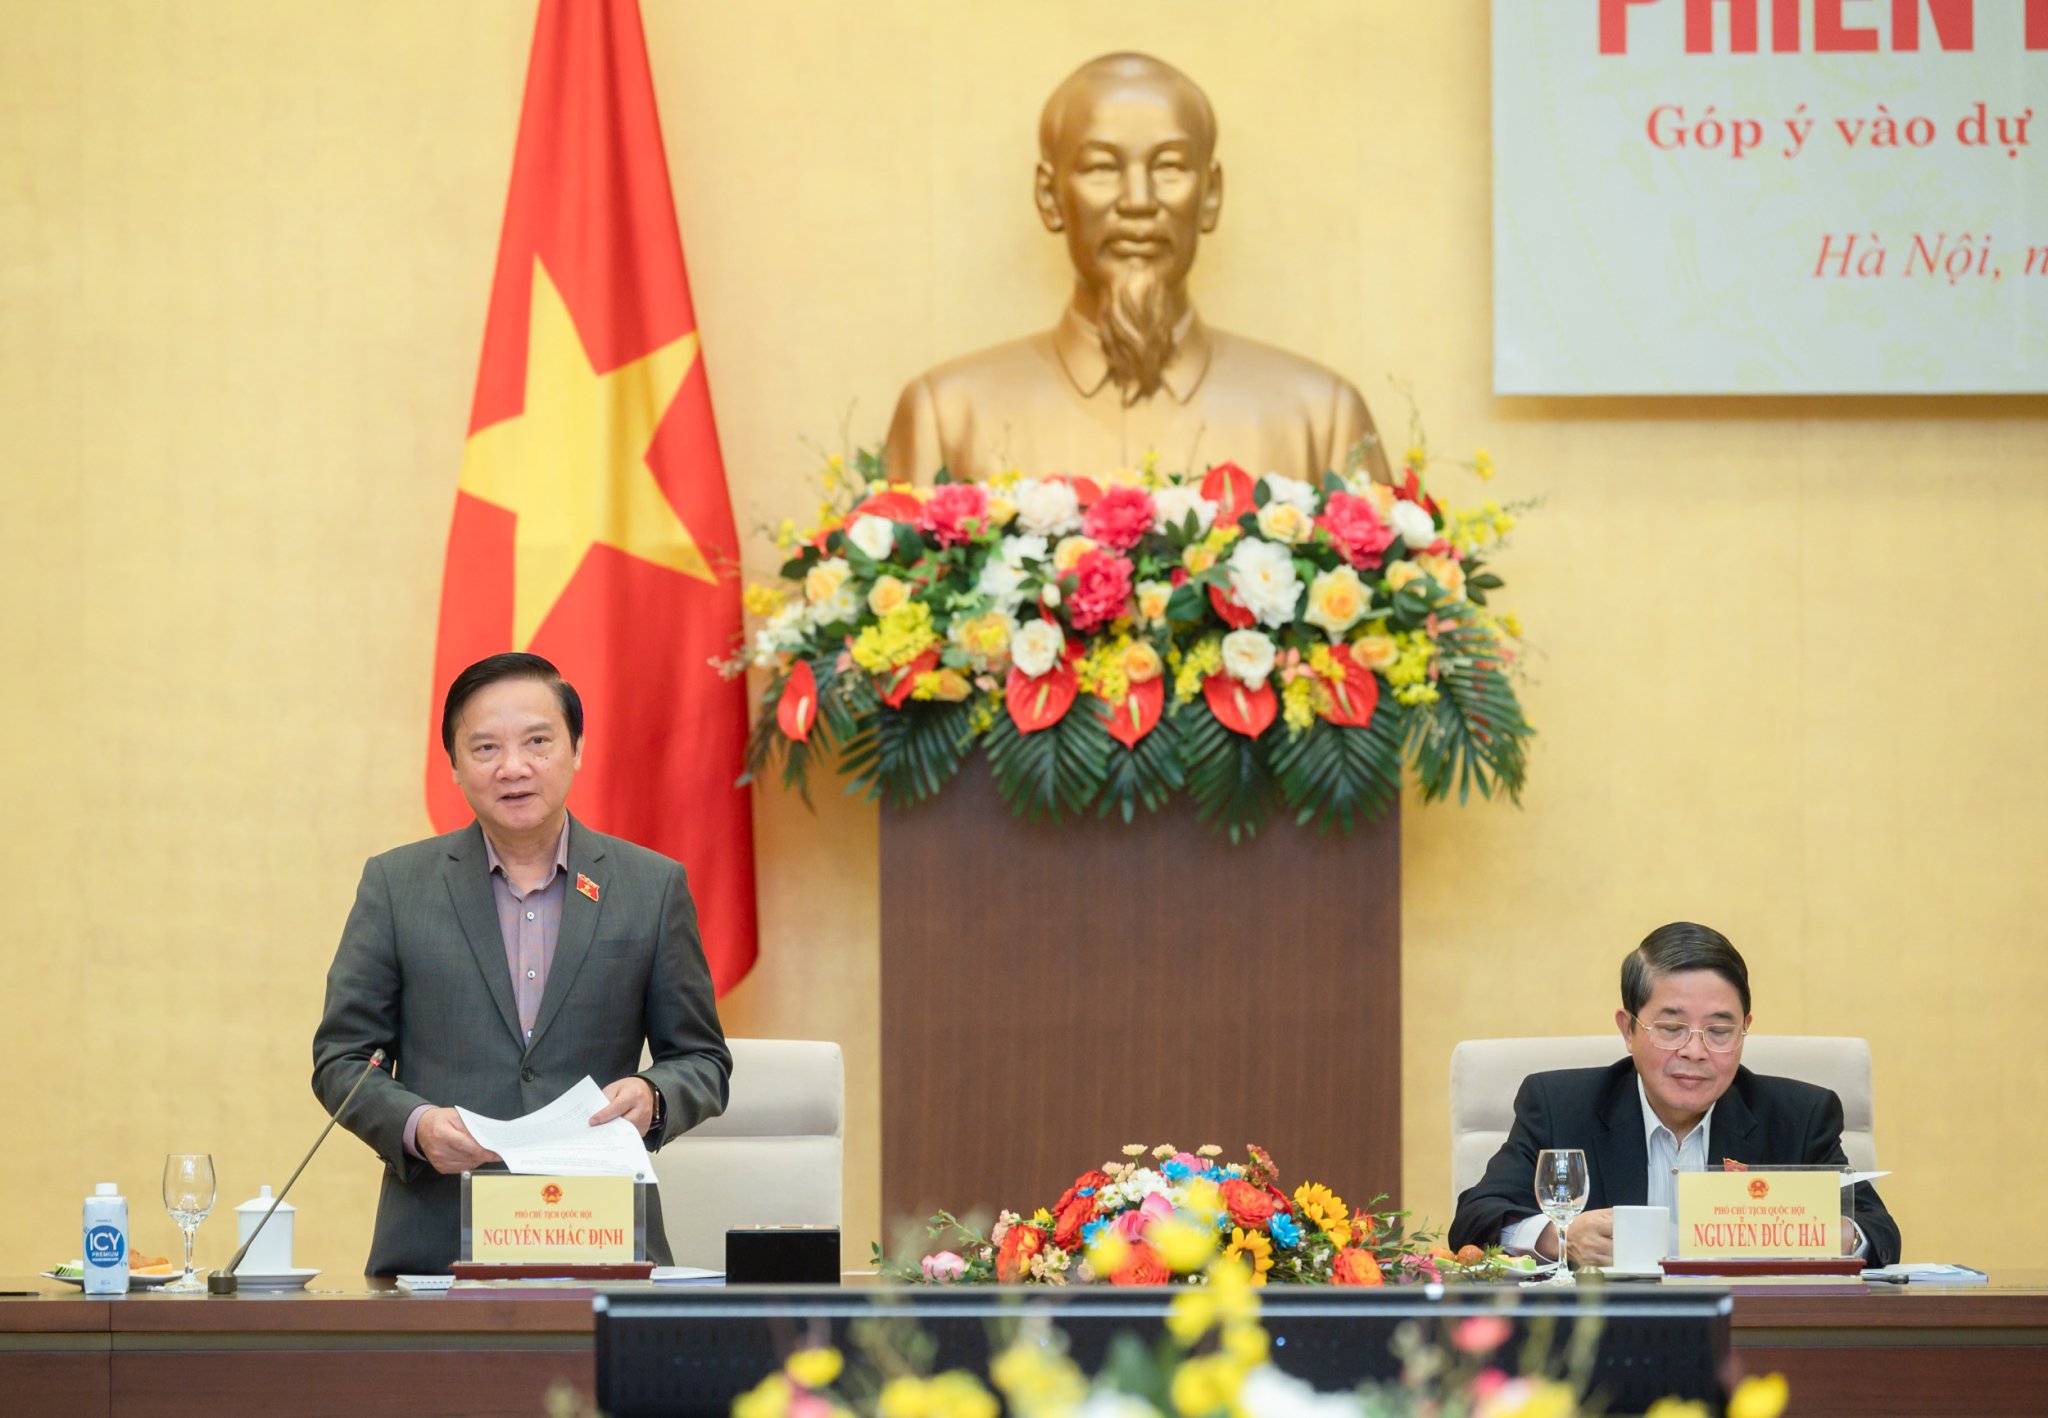 Phó Chủ tịch Quốc hội Nguyễn Khắc Định: Đất đai là động lực phát triển của giai đoạn mới